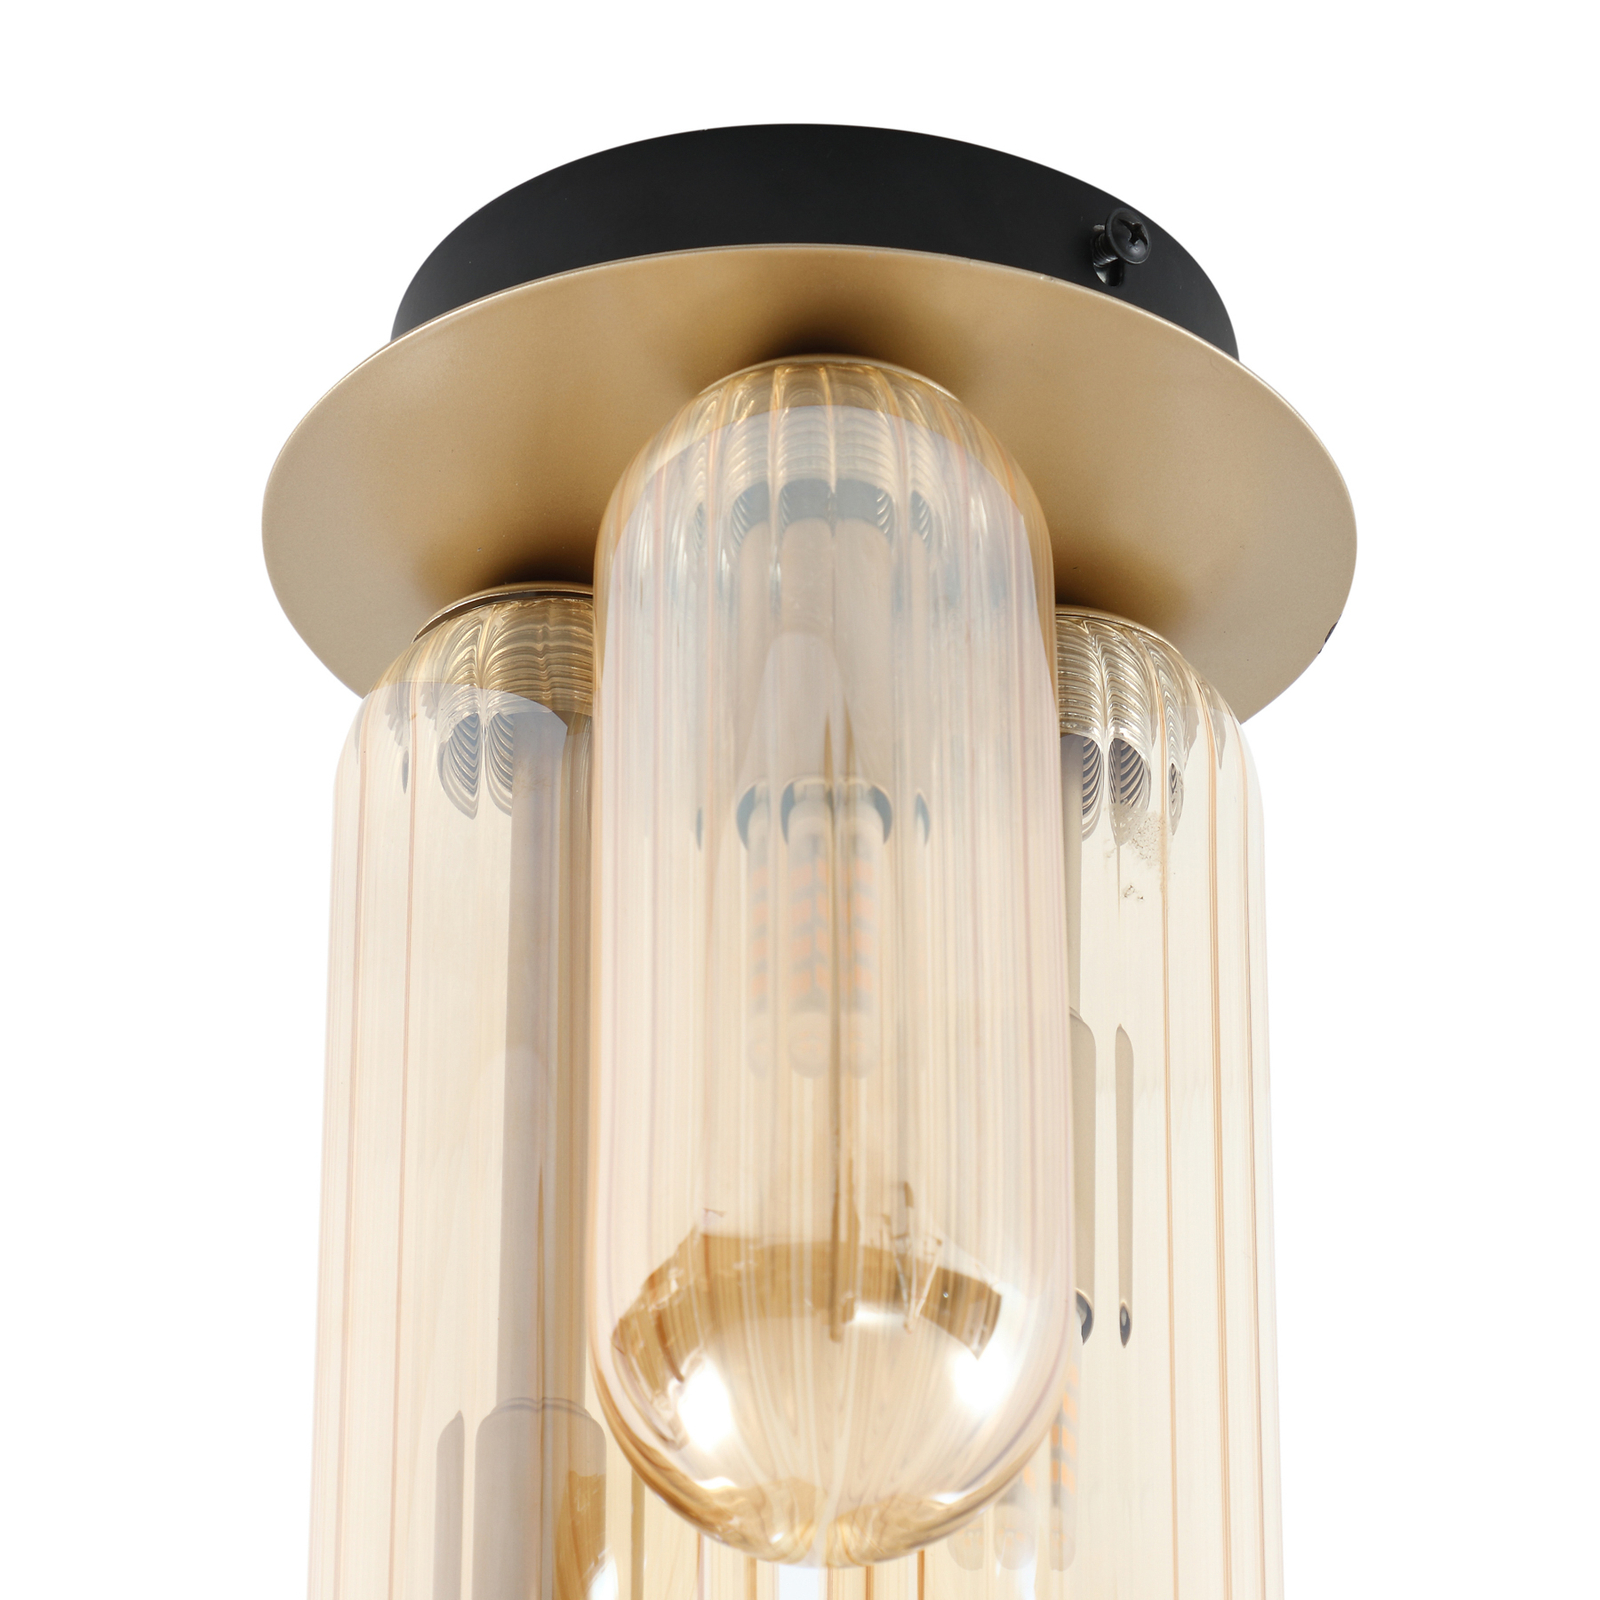 Lucande Freylin ceiling light, 3-bulb, amber, glass, 15 cm